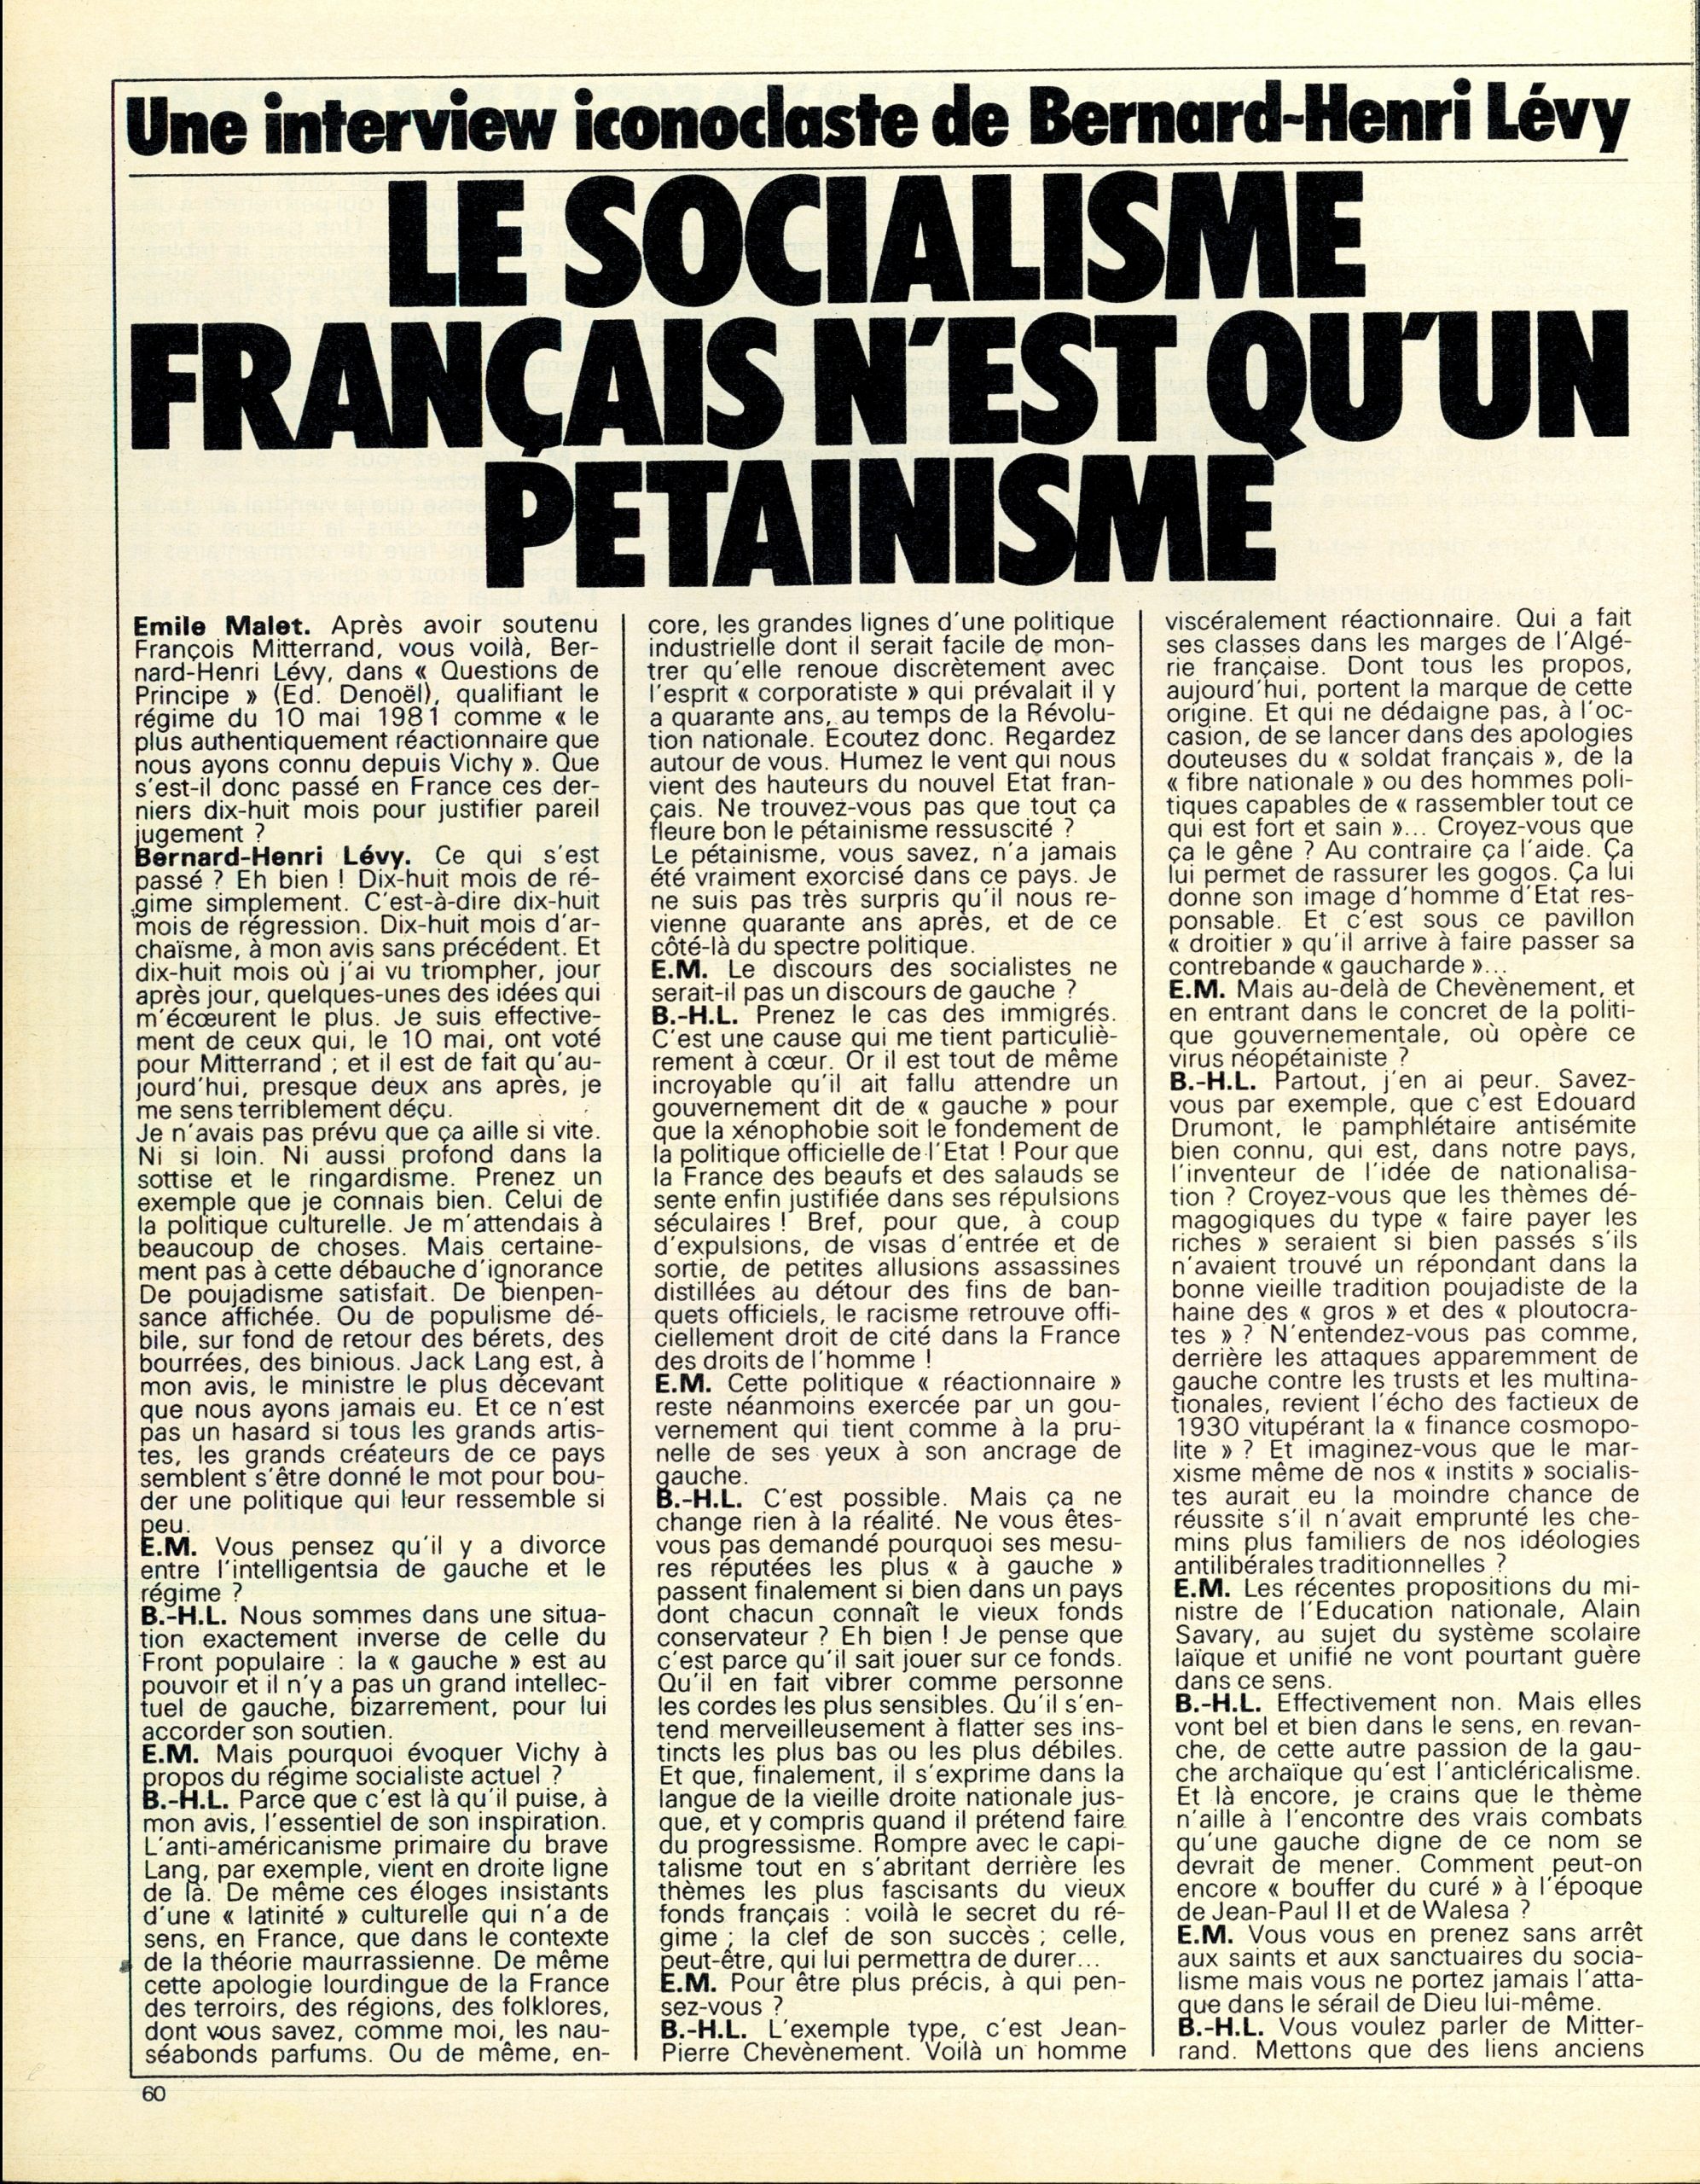 Première page de l'entretien « Le socialisme français n'est qu'un pétainisme » entre Bernard-Henri Lévy et Émile Malet, publié dans « Paris Match » le 21 janvier 1983.